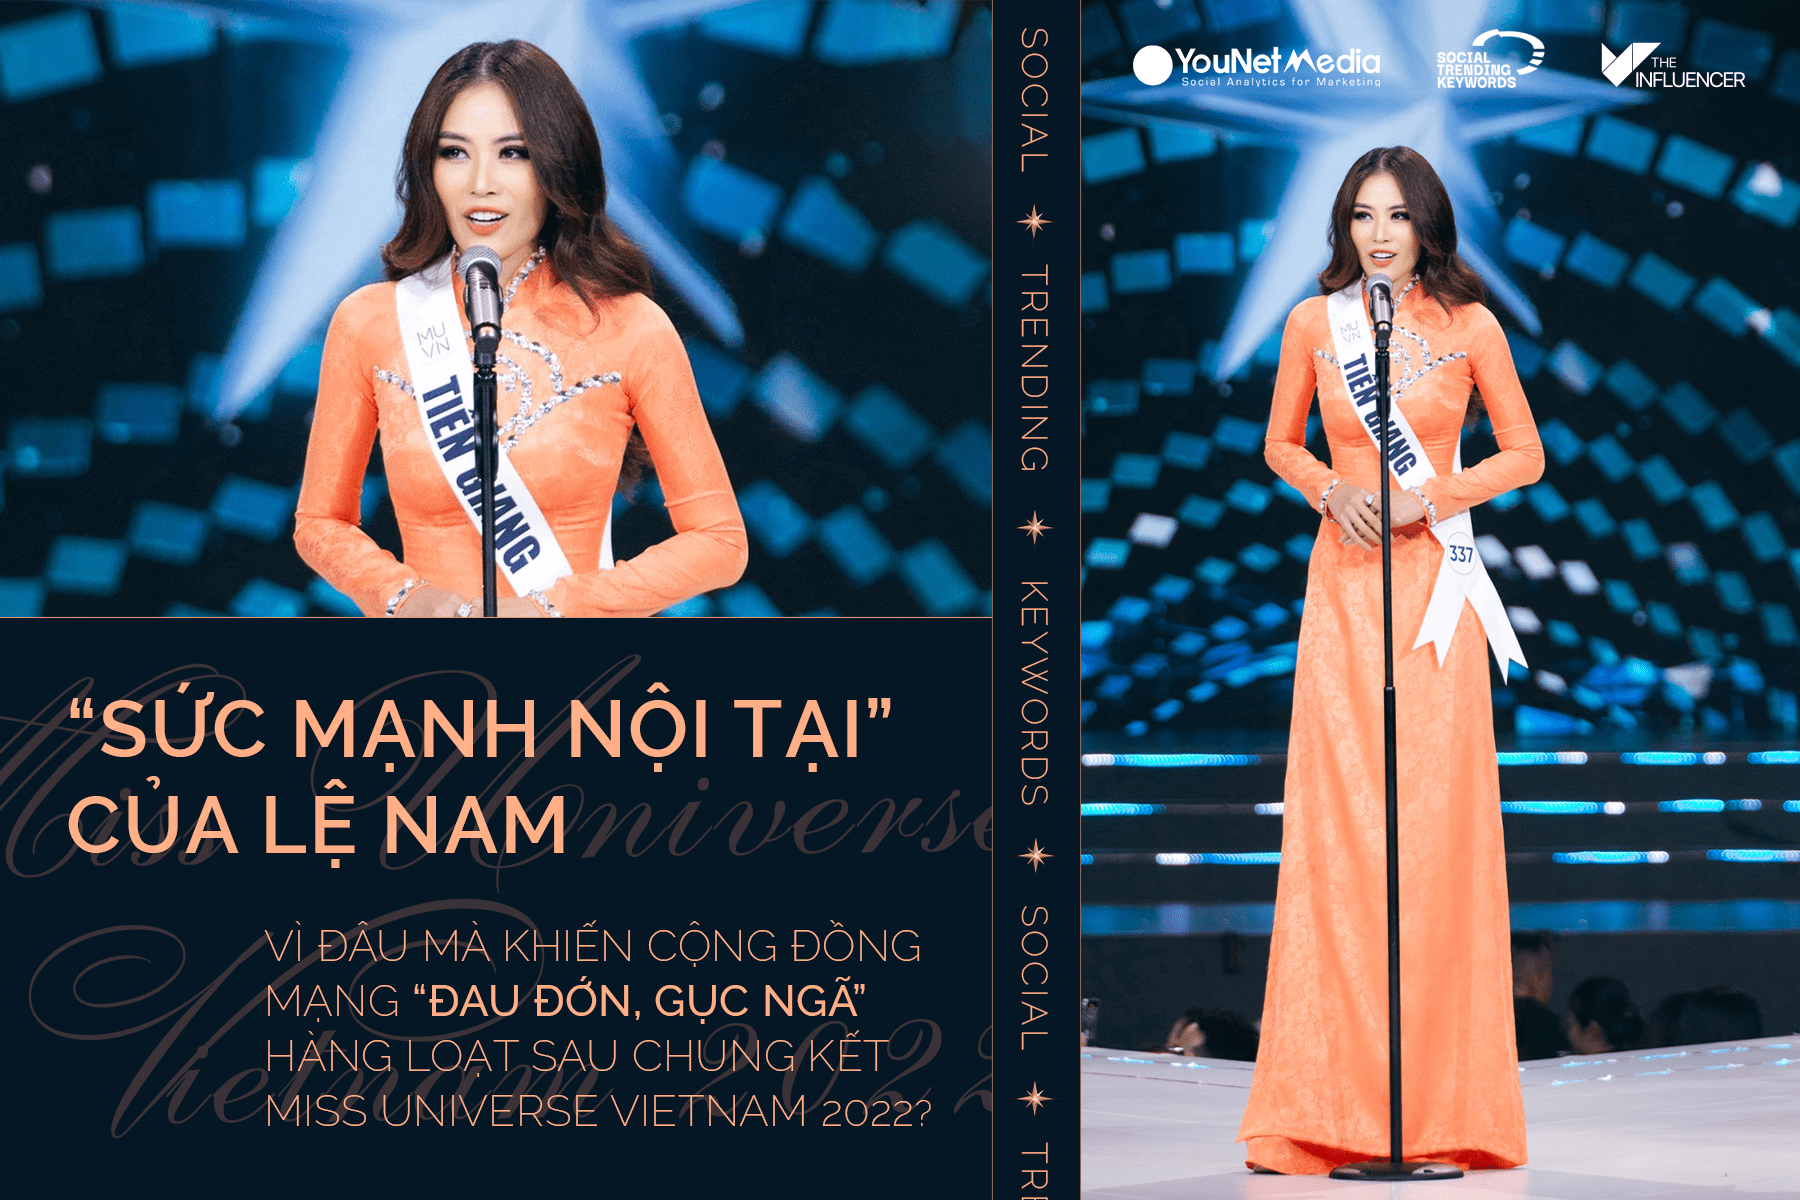 #SocialTrendingKeywords: “Sức mạnh nội tại” của Lệ Nam vì đâu mà khiến cộng đồng mạng “đau đớn, gục ngã” hàng loạt sau chung kết Miss Universe Vietnam 2022?